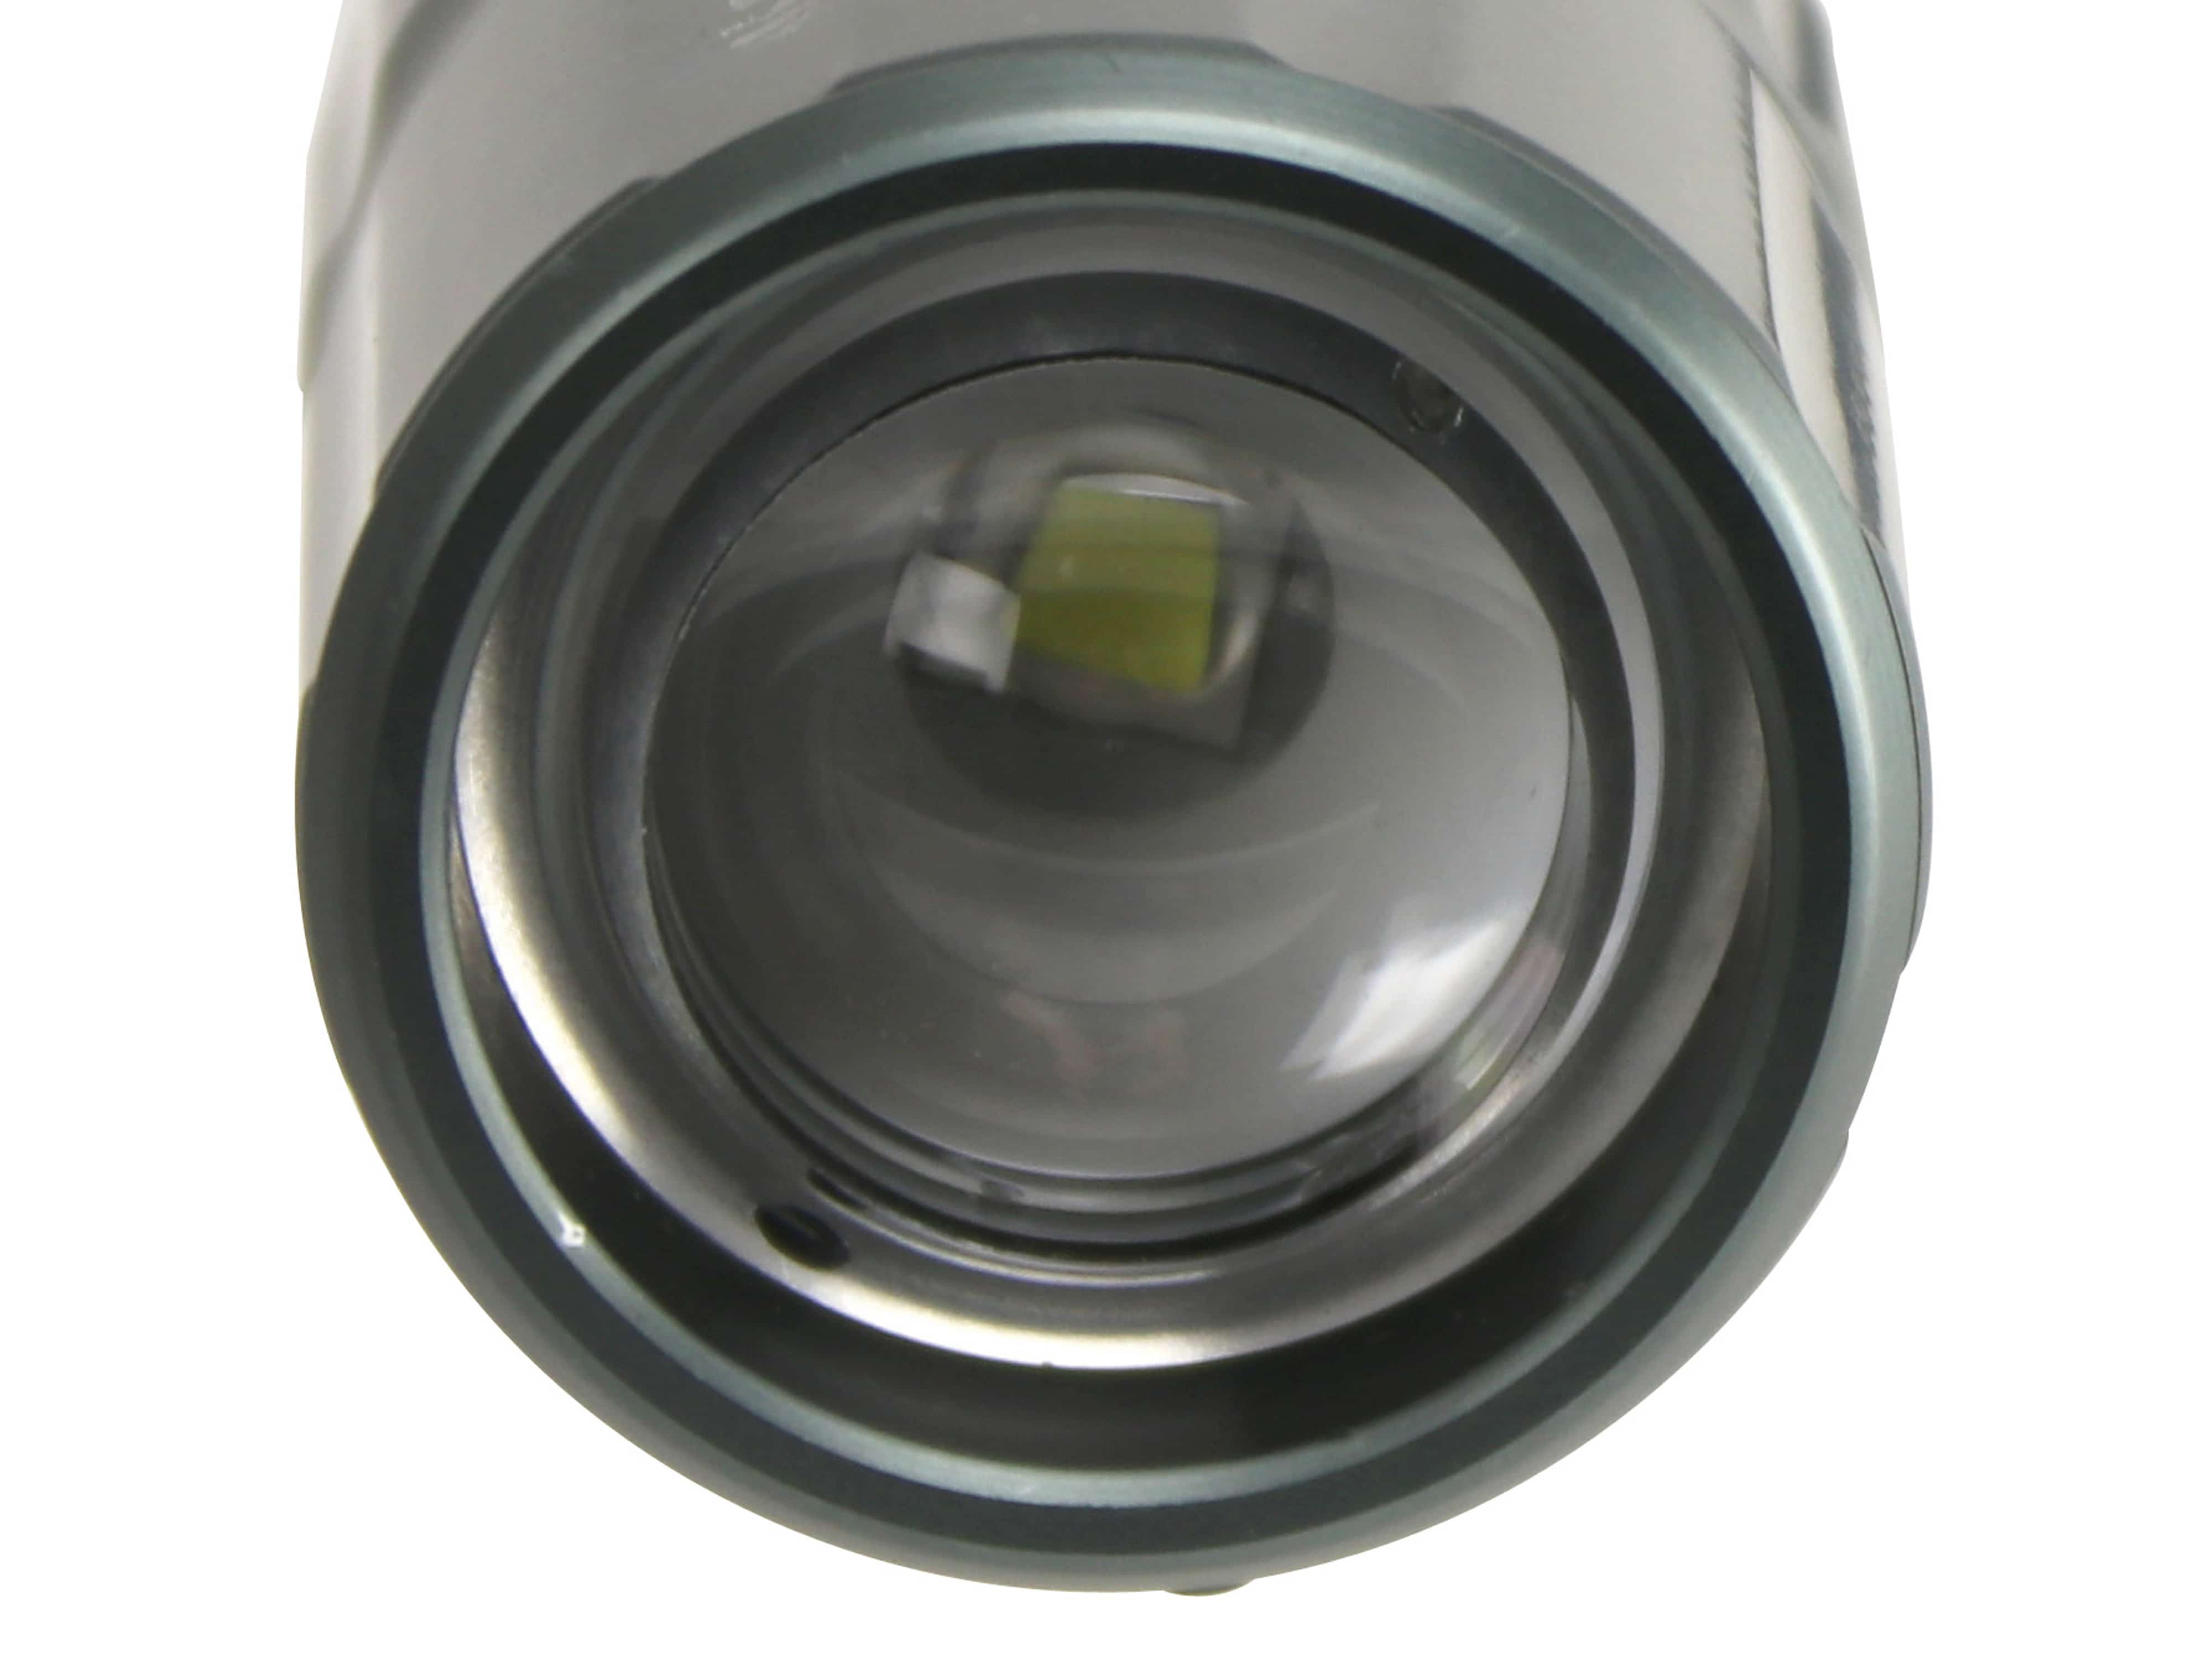 AZAA LED-Stablampe, RY610, 1200 lm, grau